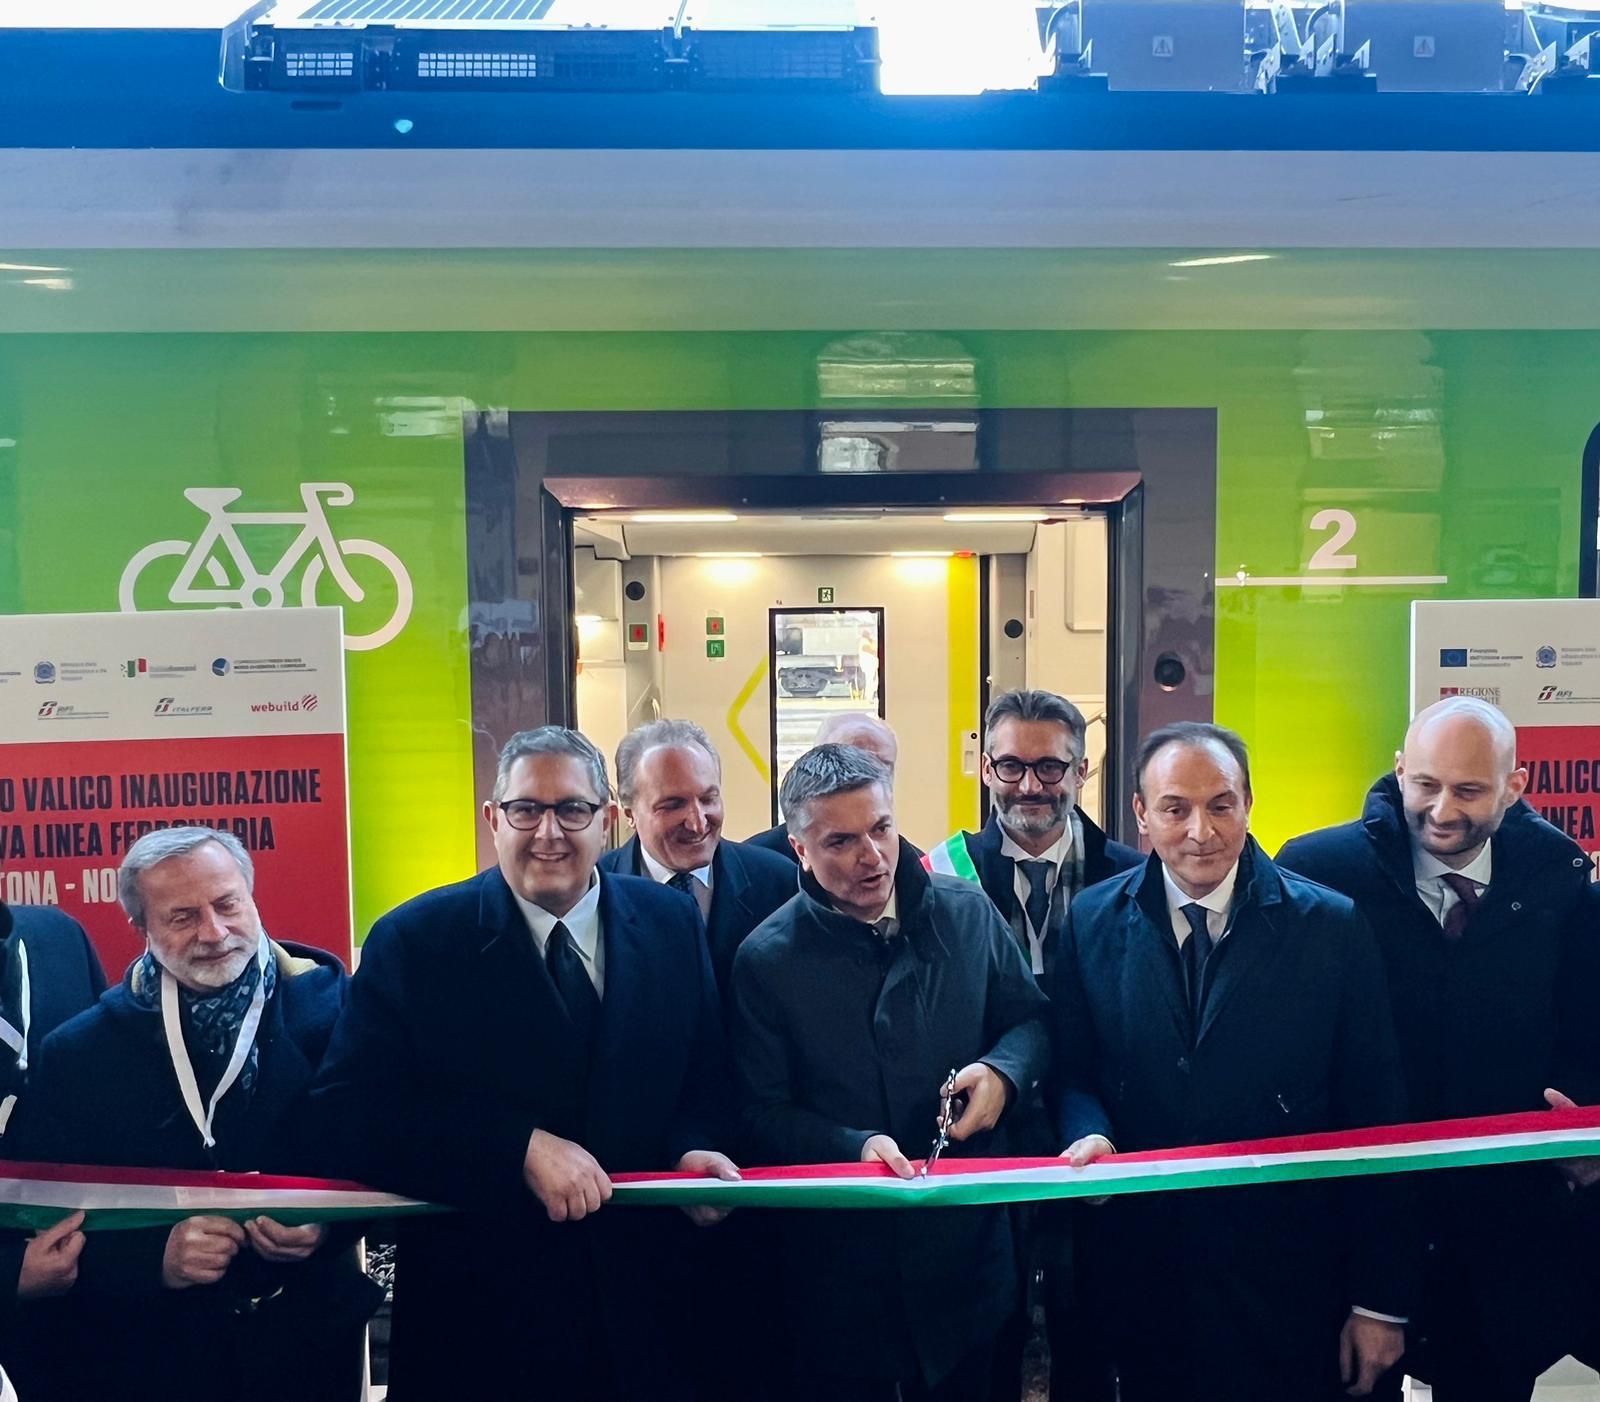 Terzo Valico: inaugurazione dei primi 8,5 chilometri della nuova linea e del servizio ferroviario tra Tortona e Novi Ligure